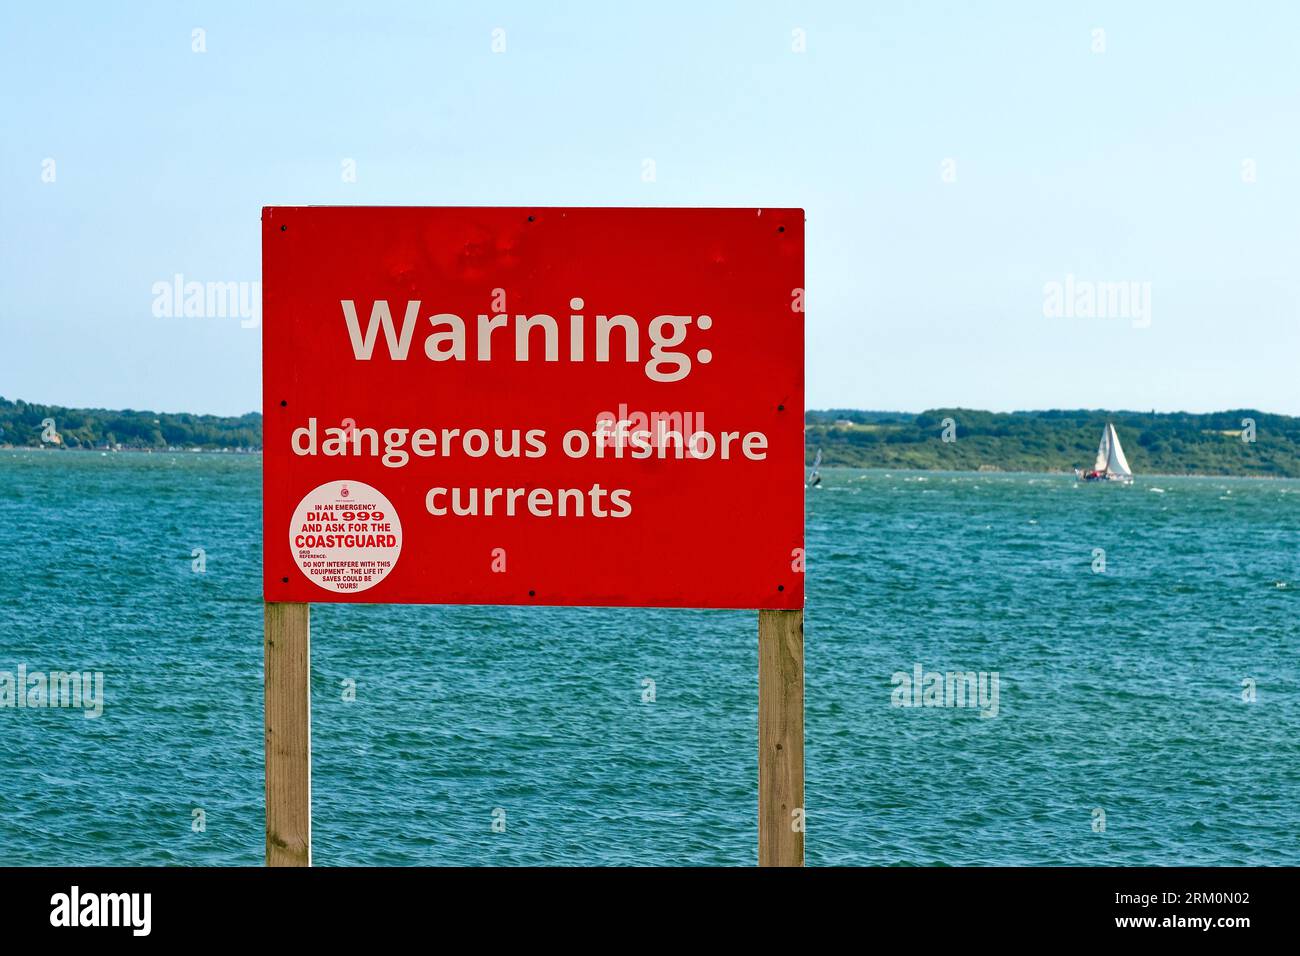 Un grande cartello rosso sulla spiaggia avverte il pubblico di "Dangerous Offshore Currents" al Lepe Country Park in un giorno estivo Hampshire Inghilterra Regno Unito Foto Stock